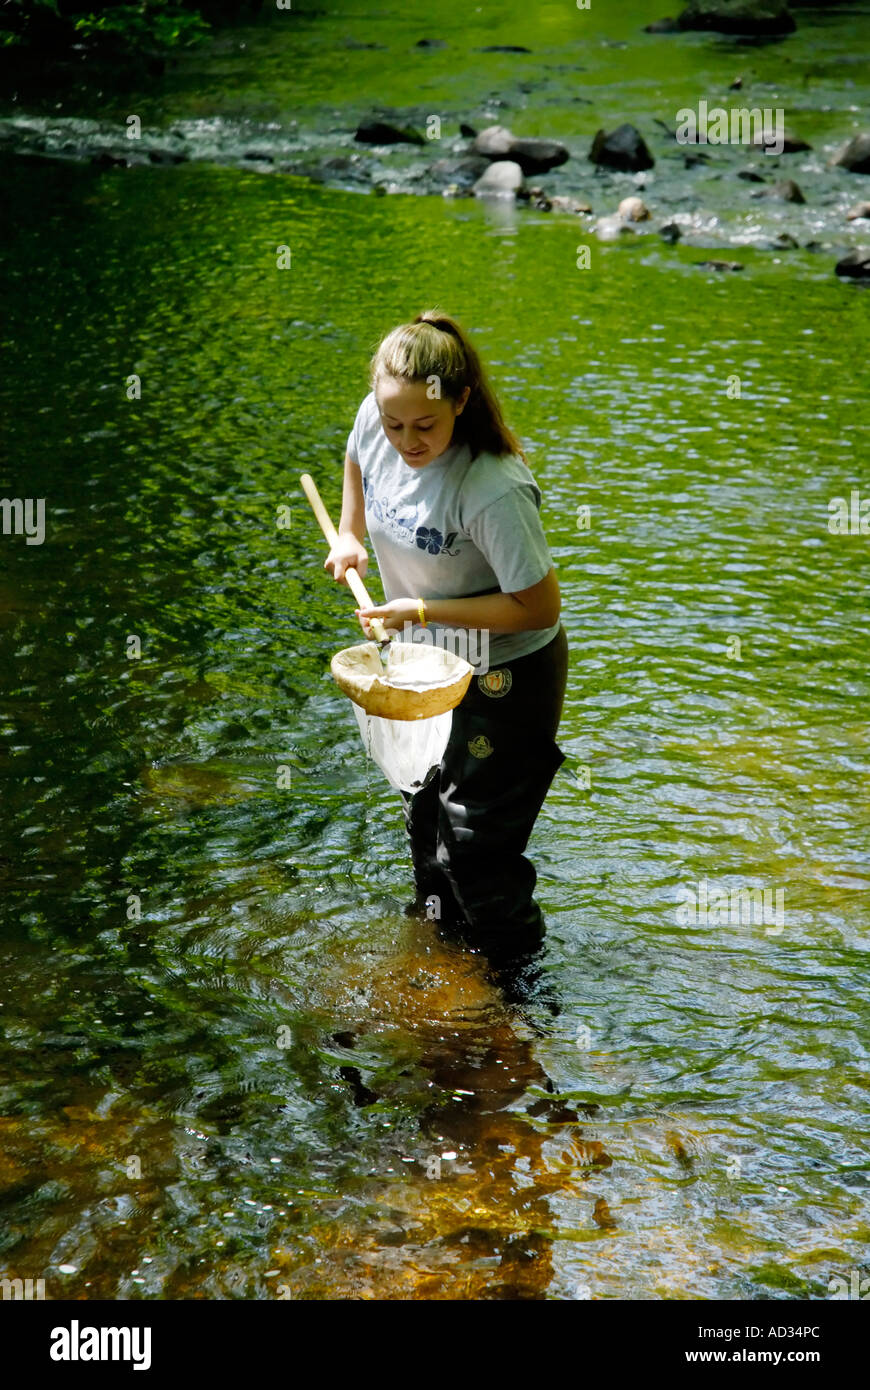 Teenager-Mädchen mit net Probenahme Flusswasser für Fische und Wirbellosen biologischen Indikatoren für die Wasserqualität Stockfoto